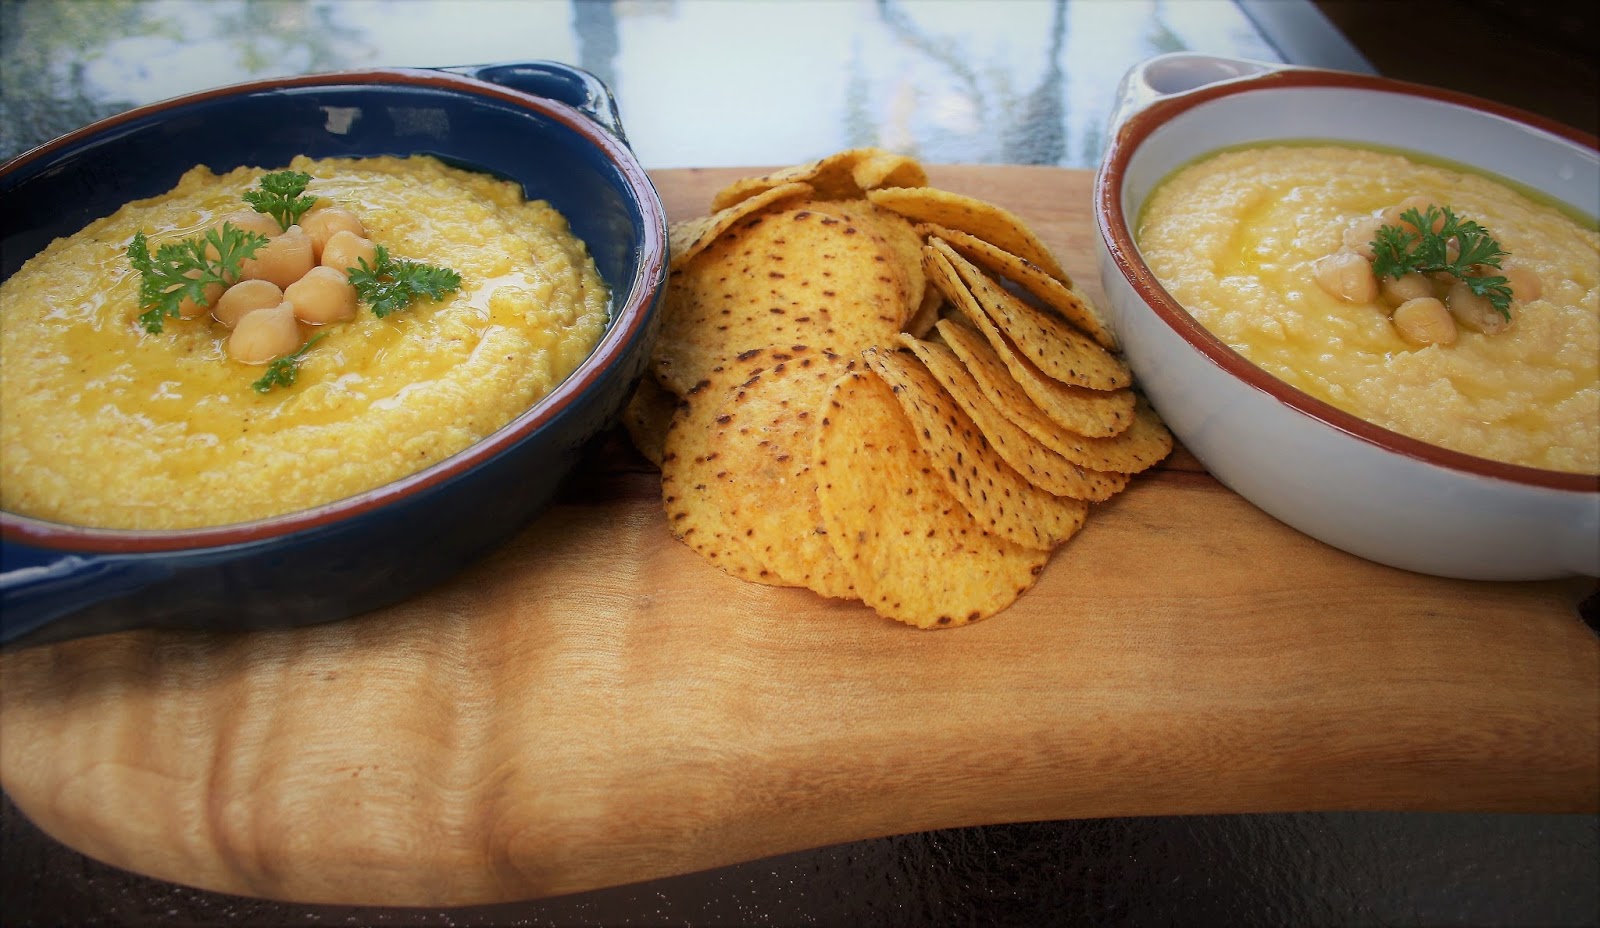 Recipe of the week: Hummus